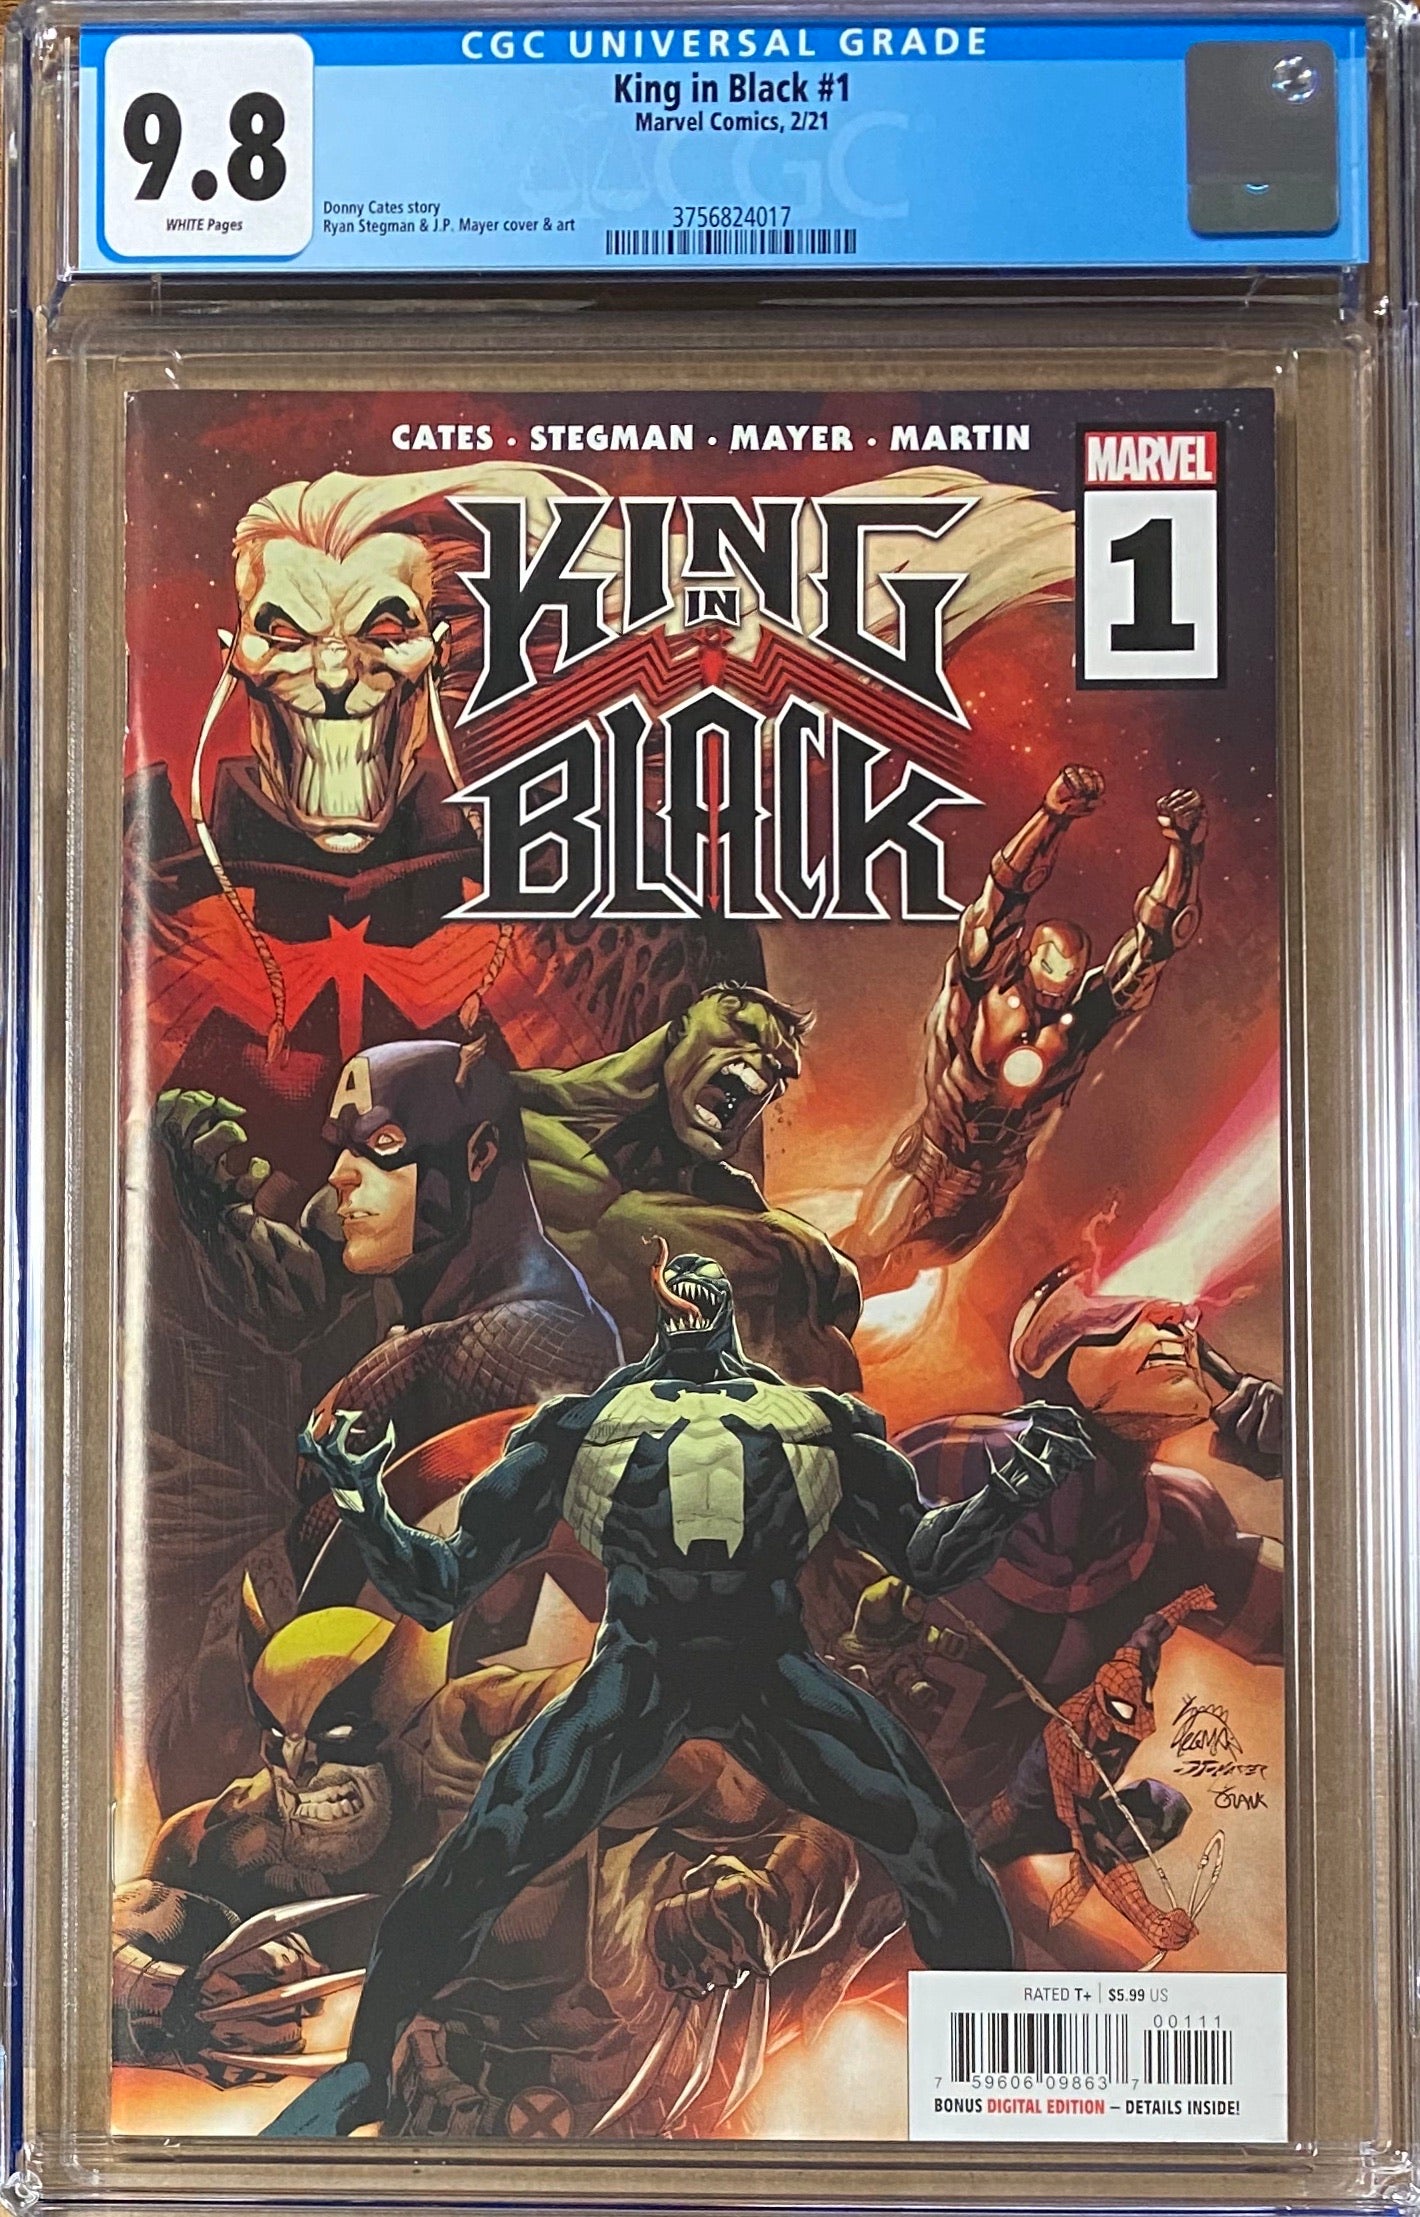 King in Black #1 CGC 9.8